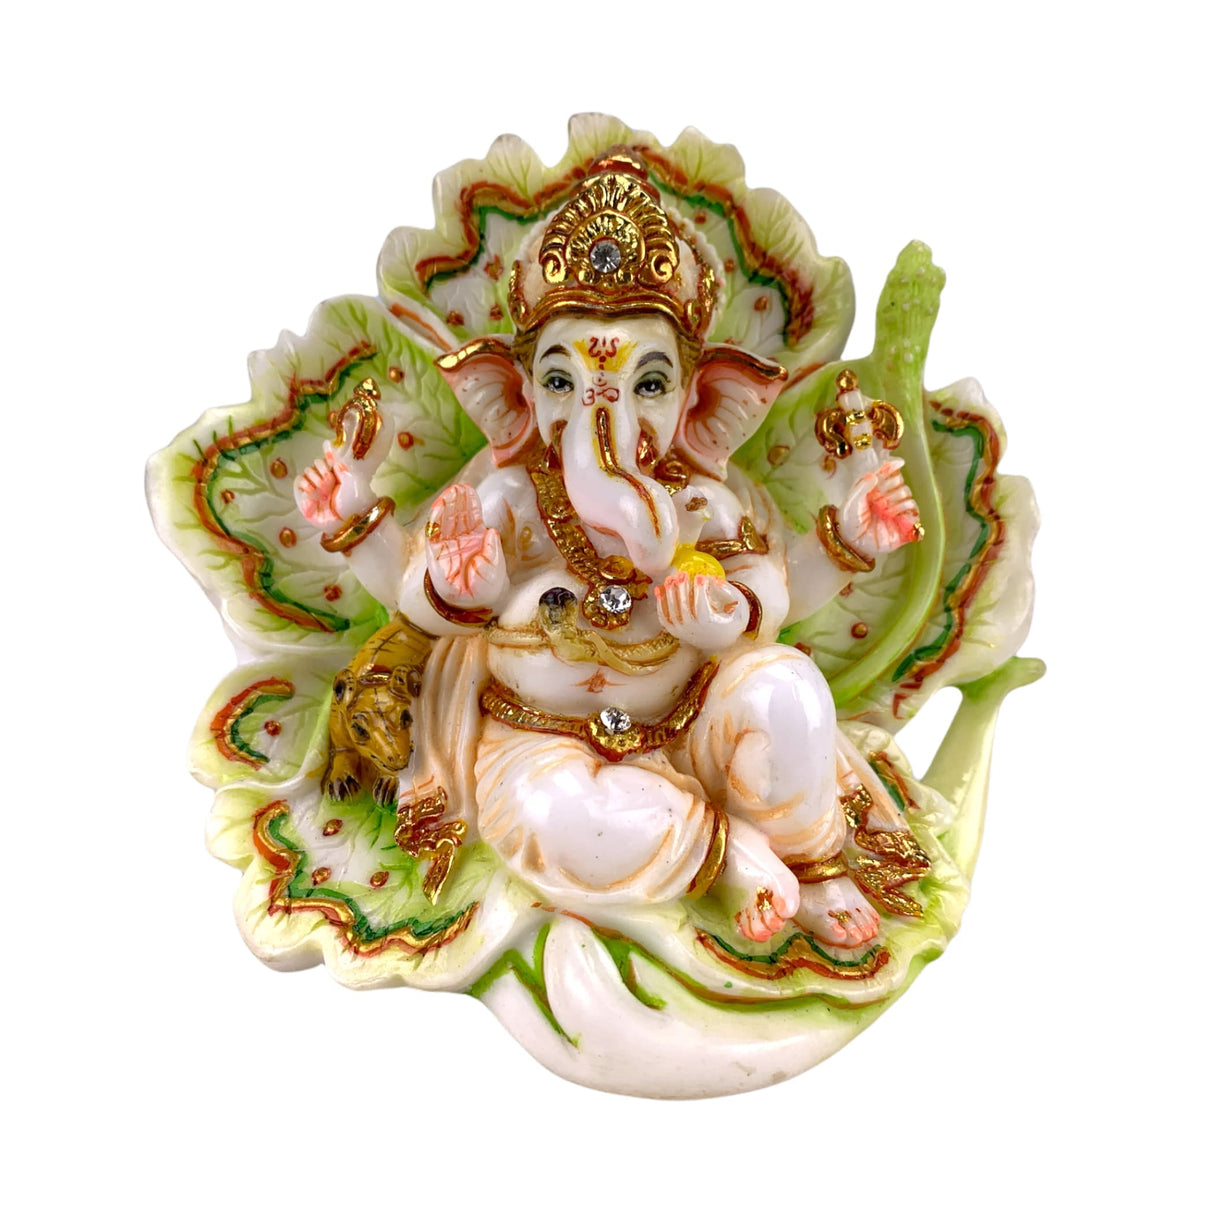 Lord ganesha for car idol showpiece ganpati figurine god